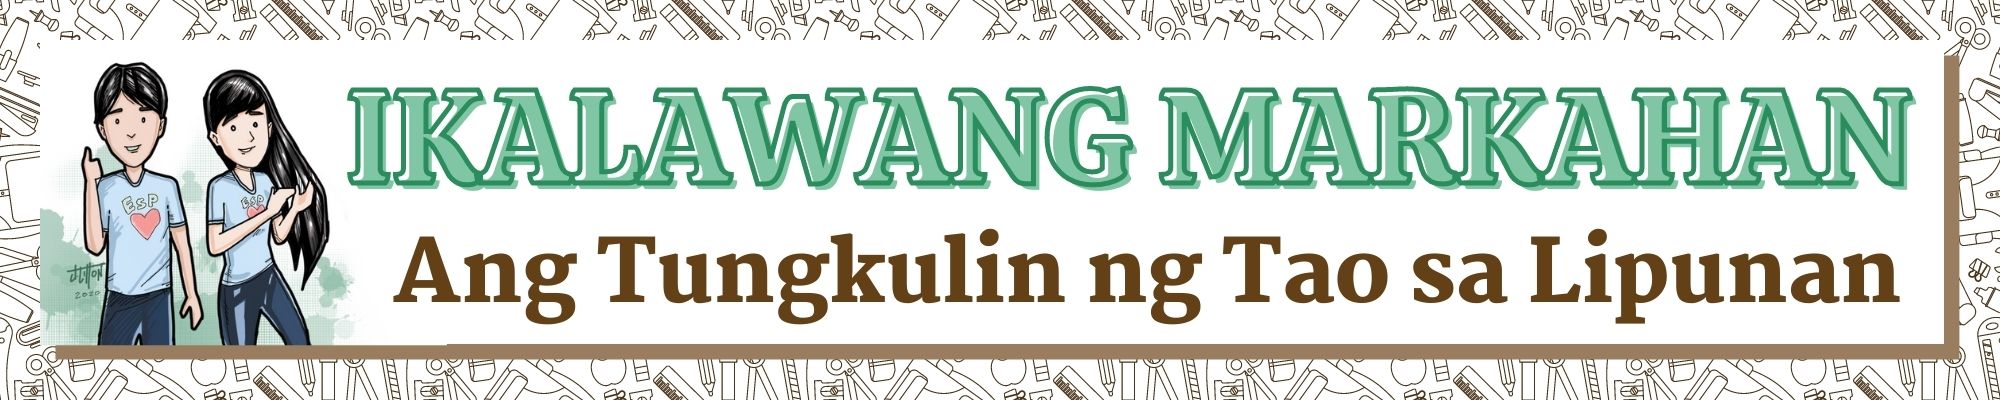 G9 - Edukasyon sa Pagpapakatao - Ikalawang Markahan: Ang Tungkulin ng Tao sa Lipunan